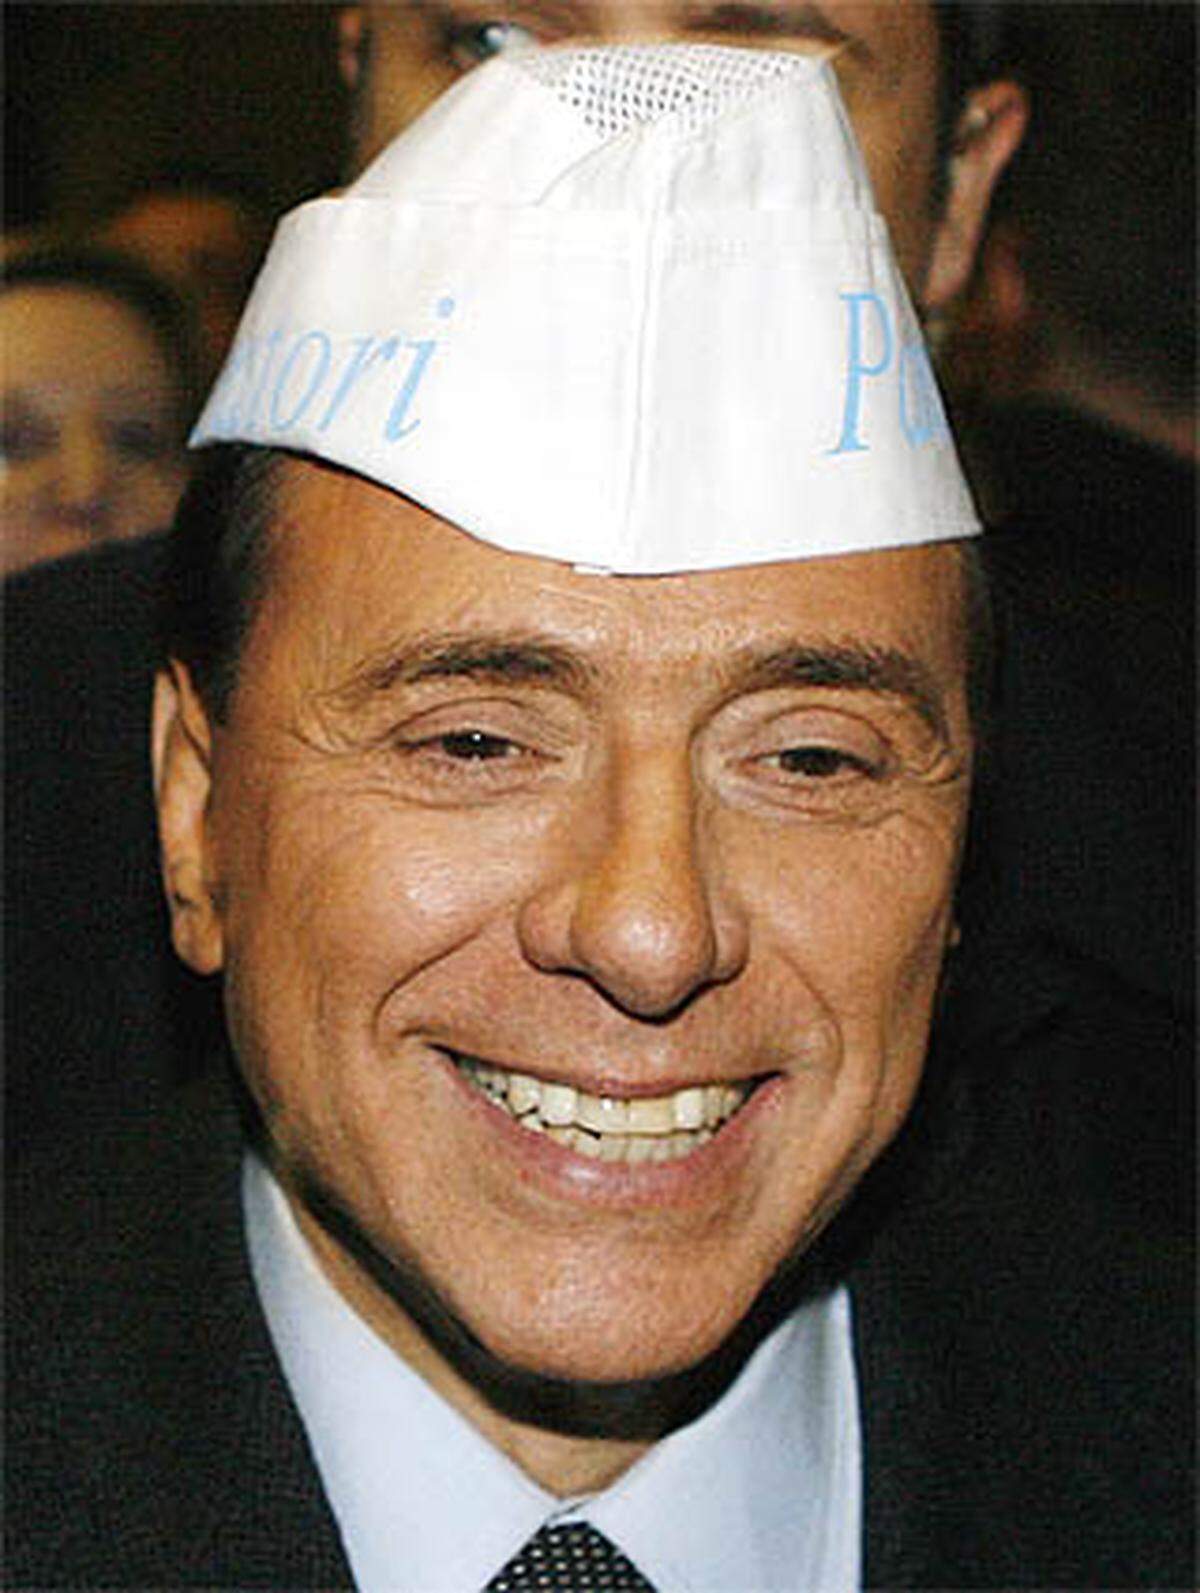 Immer wieder sorgte Berlusconi mit sexistischen Sagern für Wirbel. So antwortete er einer Studentin auf deren Frage, wie junge Paare ohne sichere Arbeitsplätze in Italien eine Familie gründen könnten: "Als Vater rate ich ihnen, einen Sohn Berlusconis oder einen ähnlichen Mann zu heiraten, der nicht solche Probleme hat. Mit ihrem Lächeln können Sie sich das ja leisten."